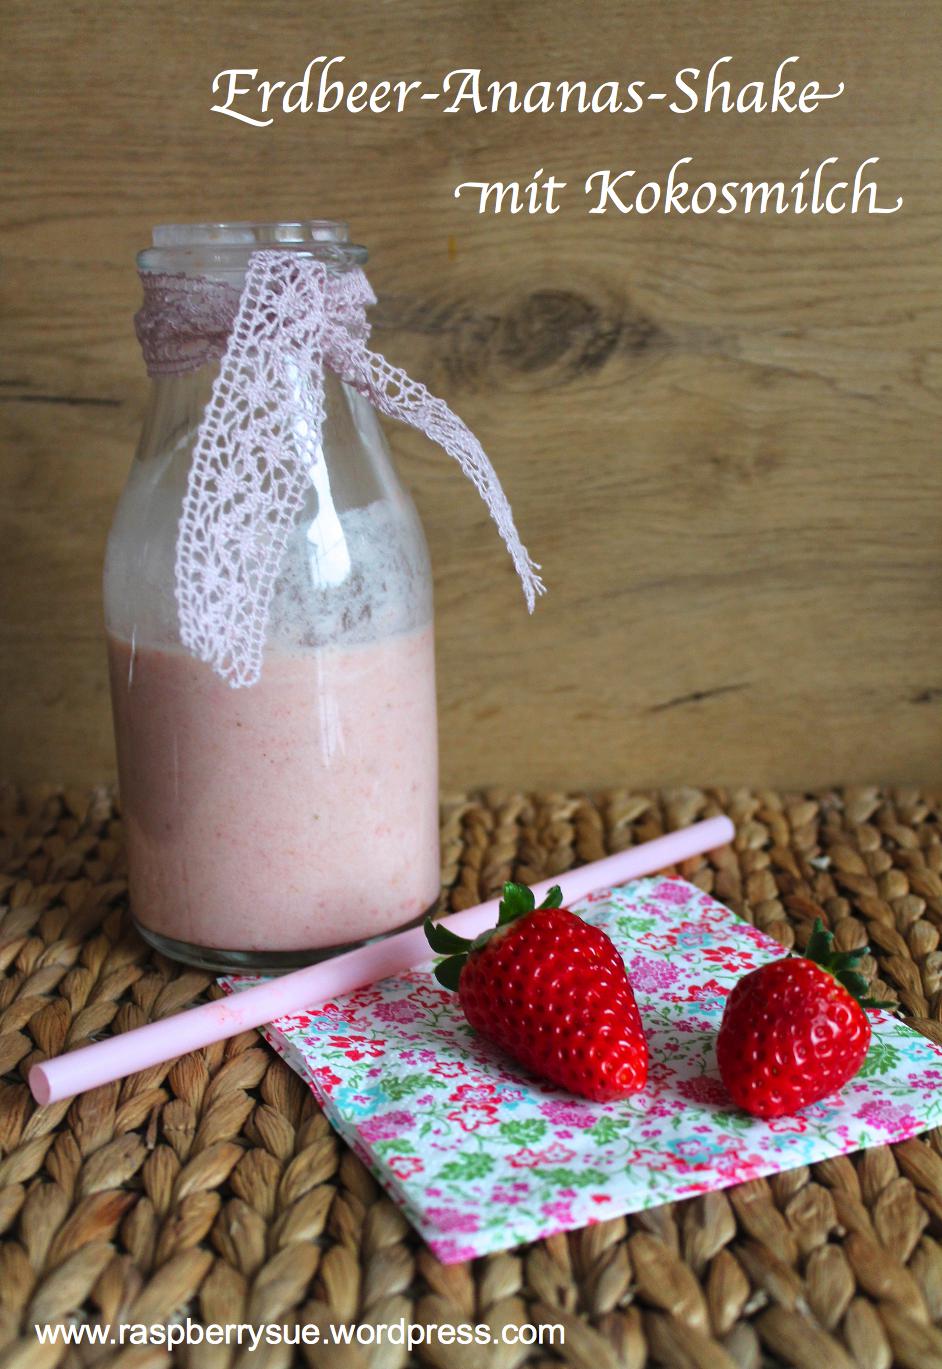 Cremiger Erdbeer-Ananas-Shake mit Kokosmilch (Vegan) – Raspberrysue